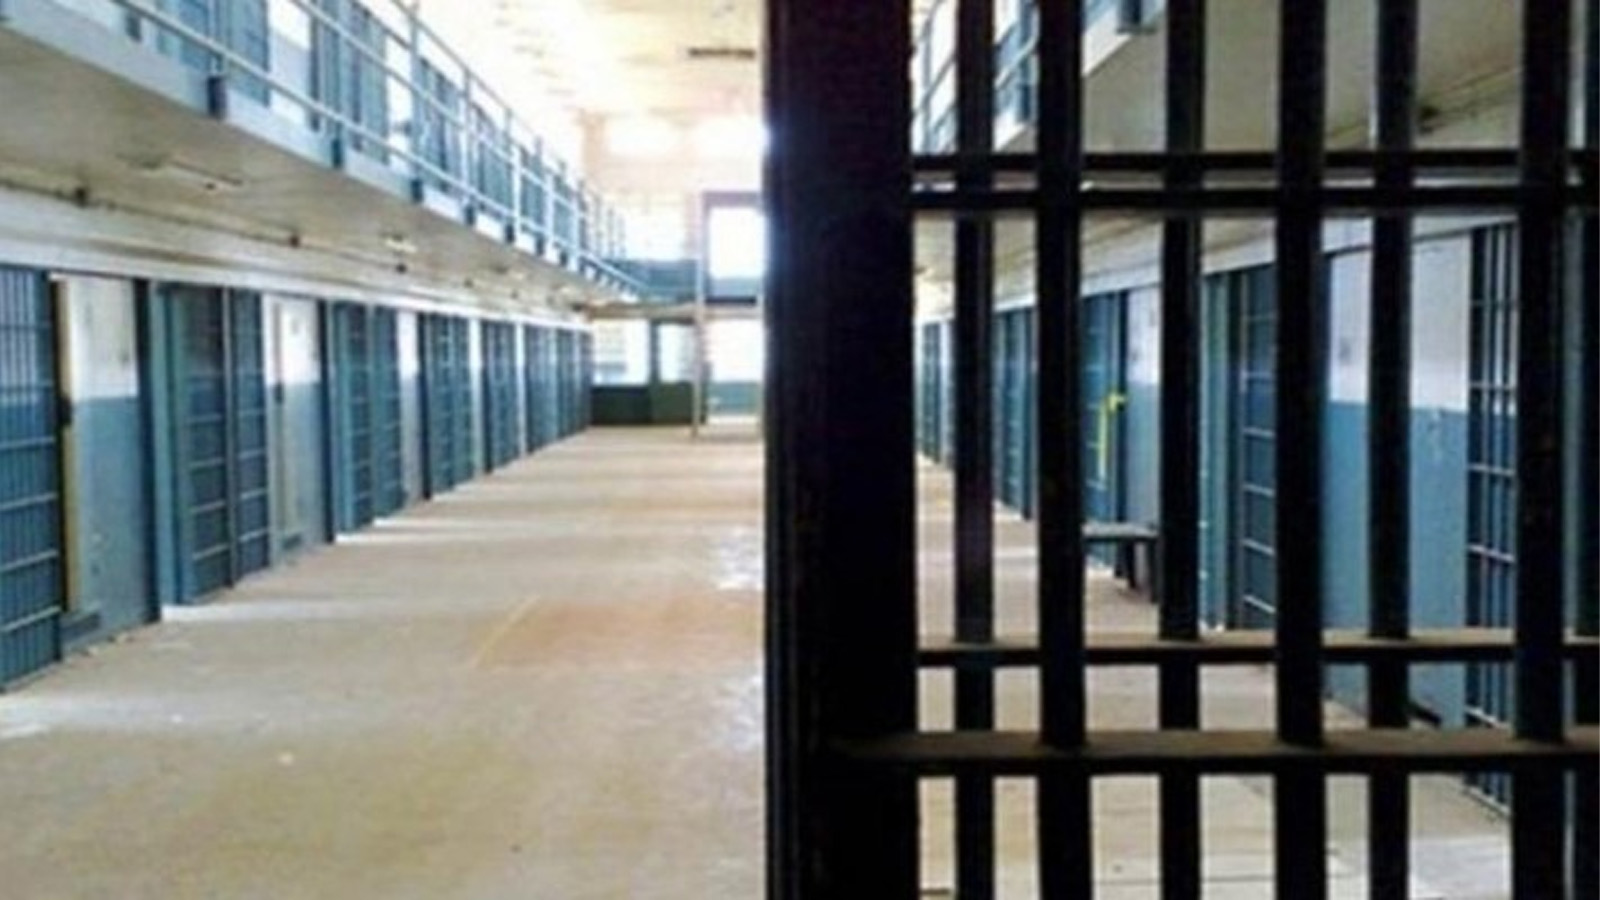 Sincan Kadın Kapalı Cezaevi'nde tutukluların sağlık hakkı ihlal ediliyor